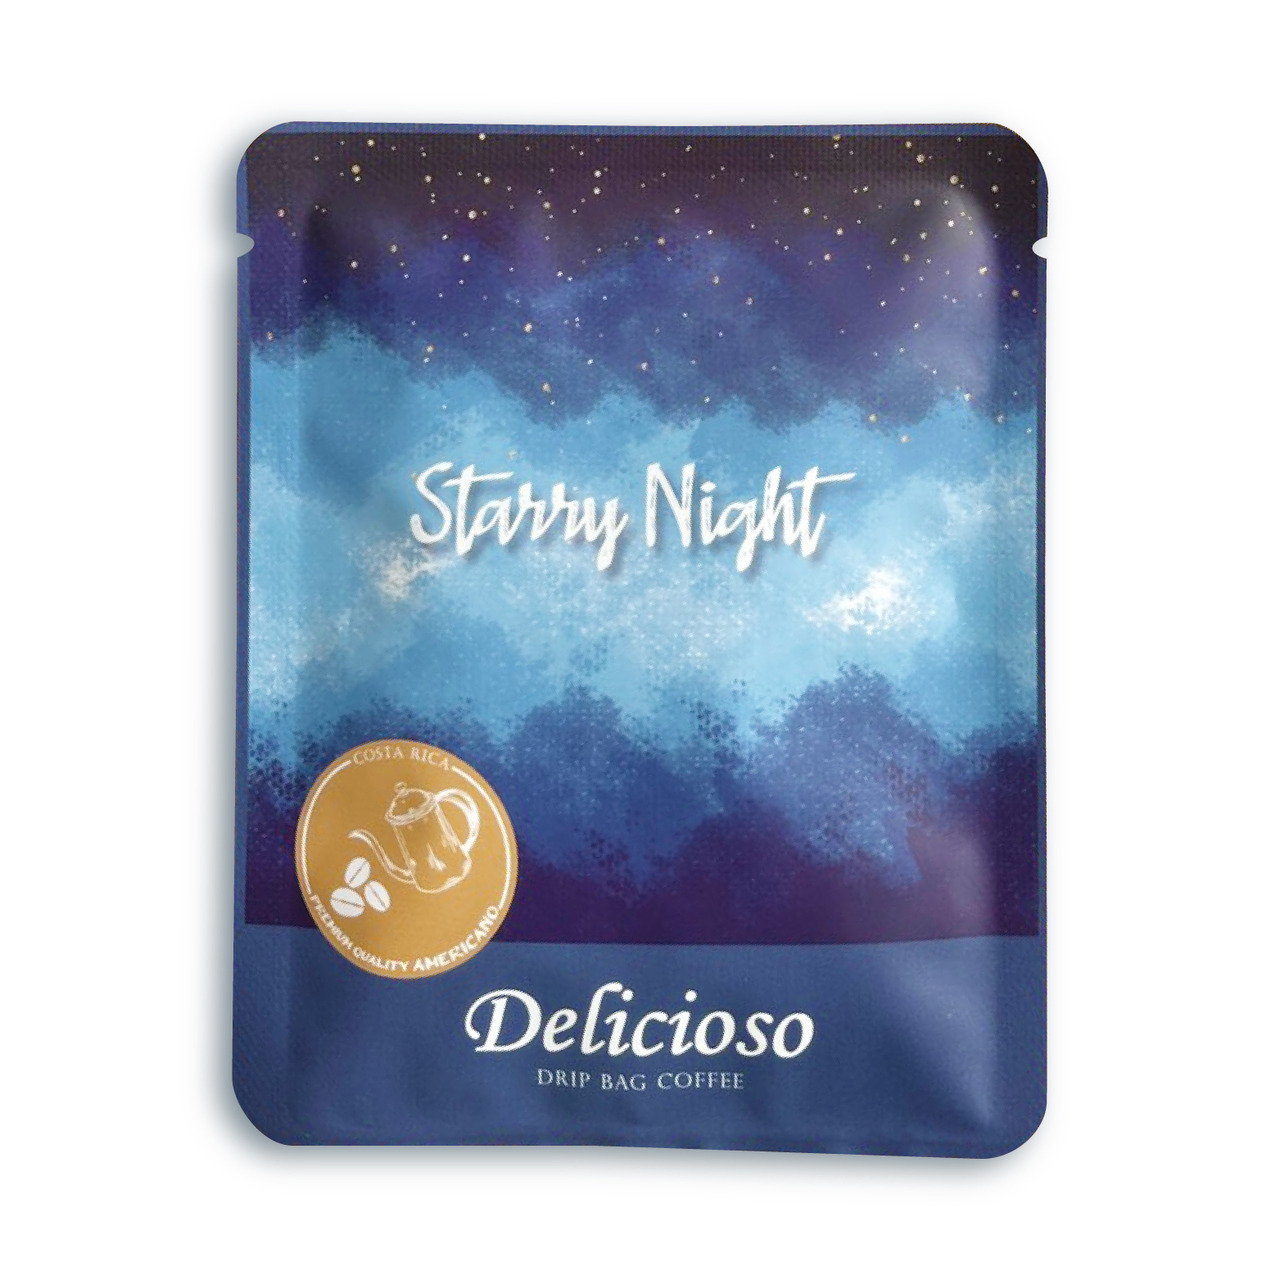 好咖系列-星空-StarryNight-德里斯-Delicioso-濾掛式咖啡12g-大容量-品味好時光